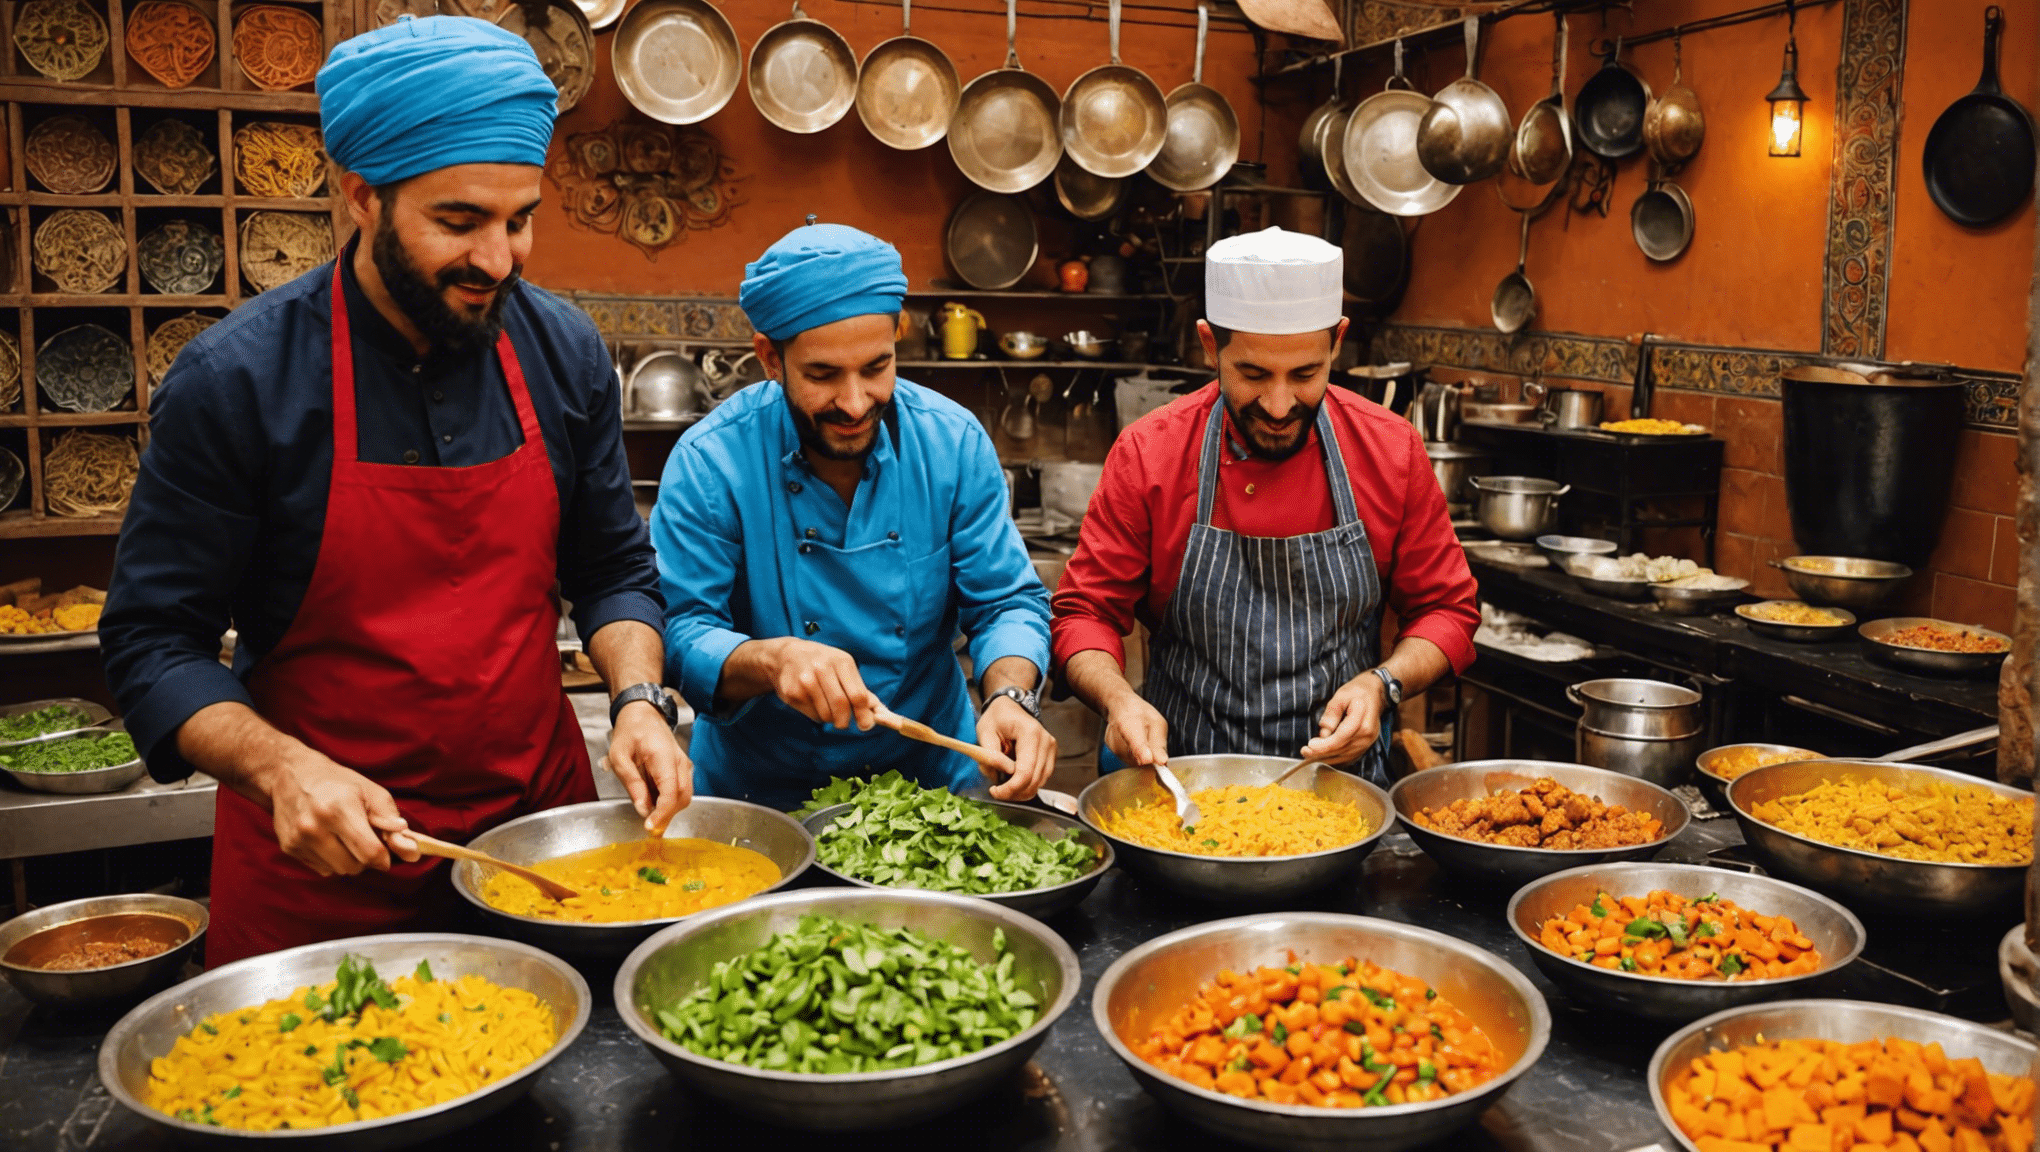 vivi il sogno dei buongustai con le lezioni di cucina a Marrakech, dove ricette tradizionali, spezie esotiche e mercati vivaci si uniscono per offrire un'avventura culinaria unica.